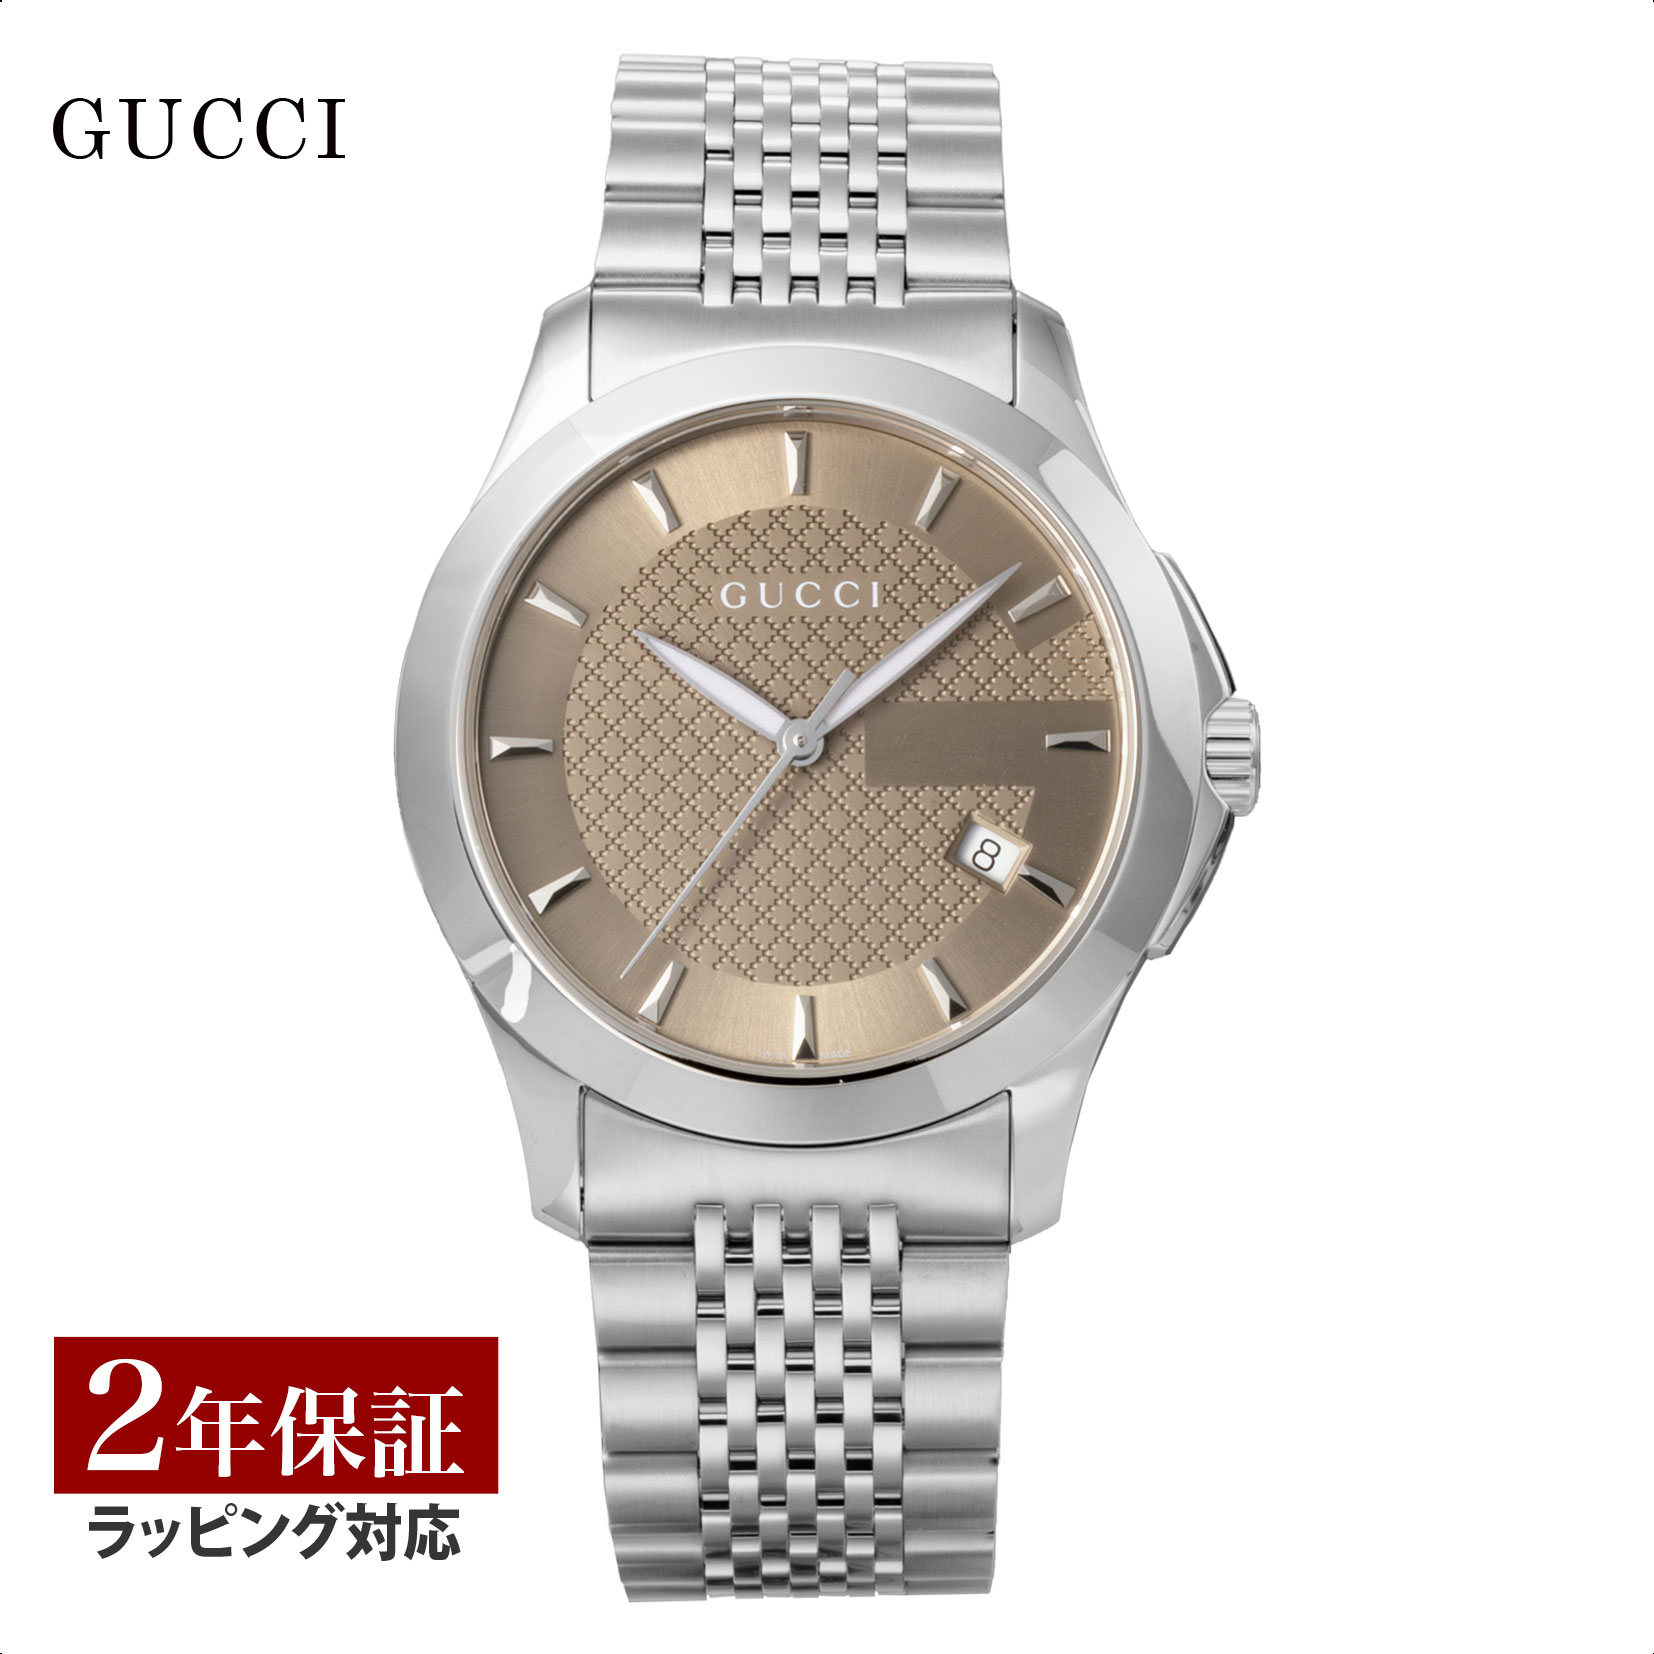 グッチ GUCCI メンズ 時計 G-TIMELESS Gタイムレス クォーツ ブラウン YA126406 時計 腕時計 高級腕時計 ブランド